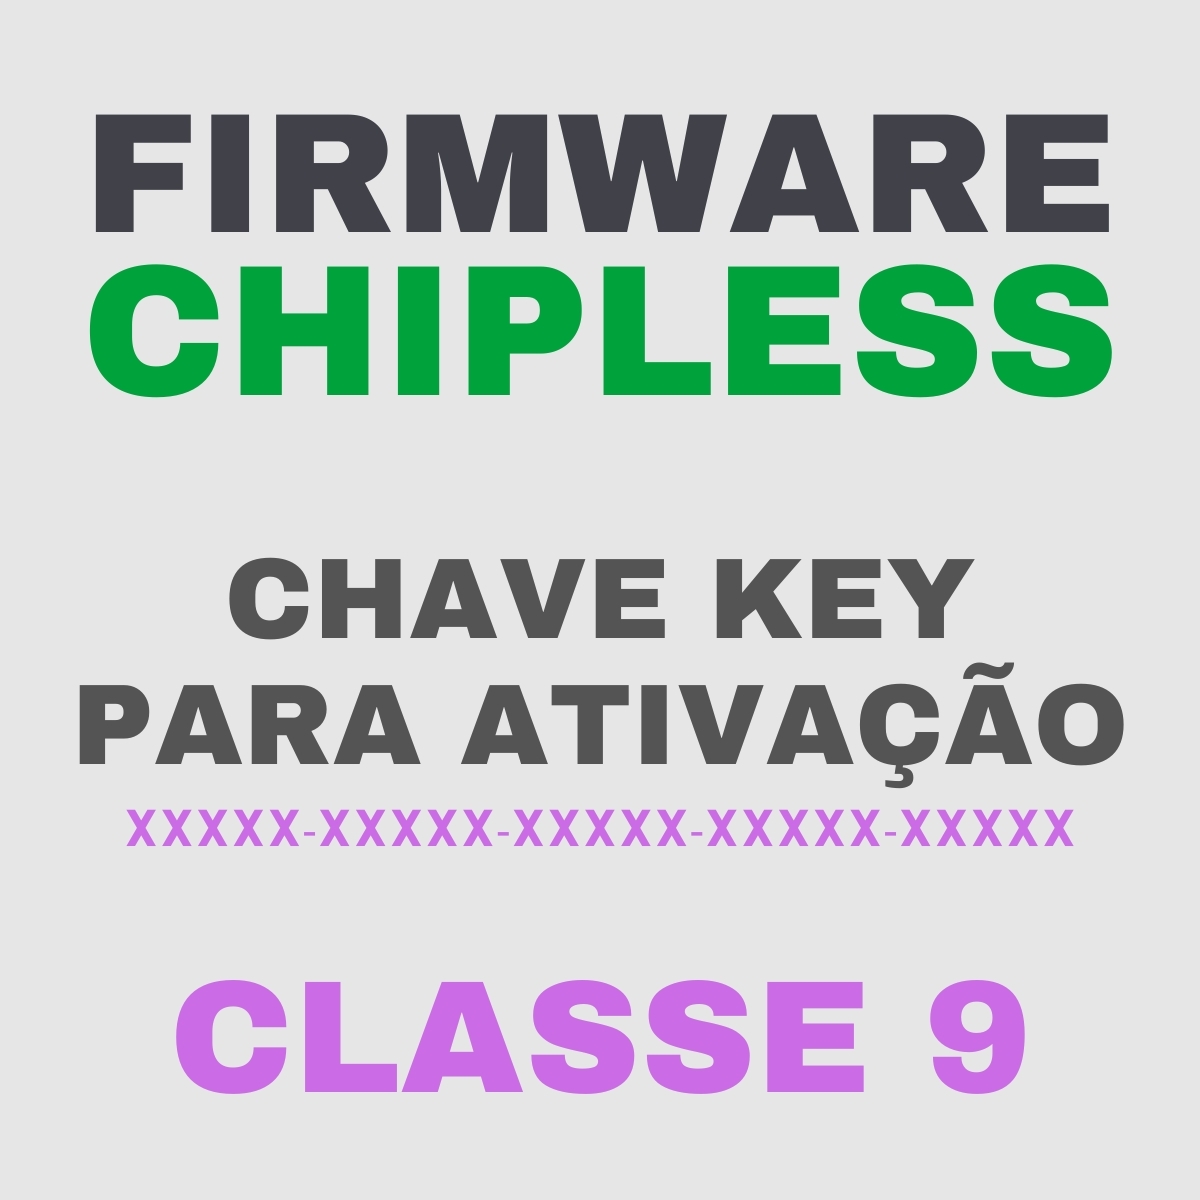 Chave Key de Ativação Firmware ChipLess para Impressora Epson - Classe 9